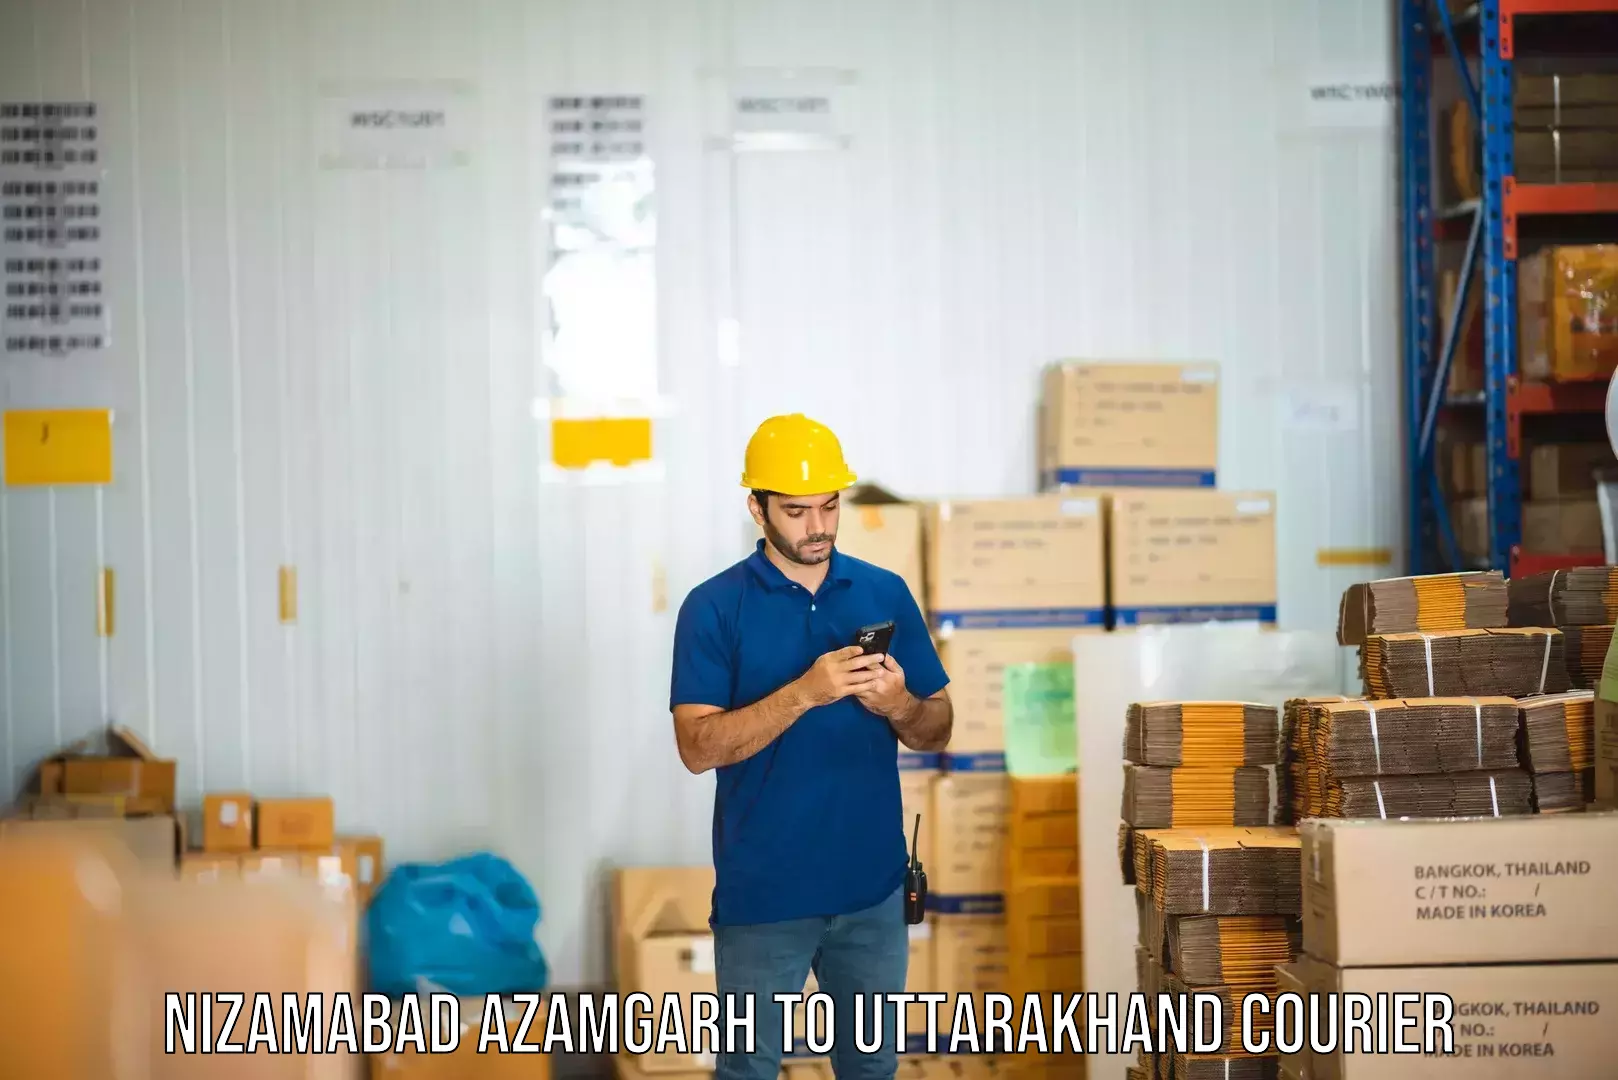 Modern courier technology Nizamabad Azamgarh to Rudraprayag